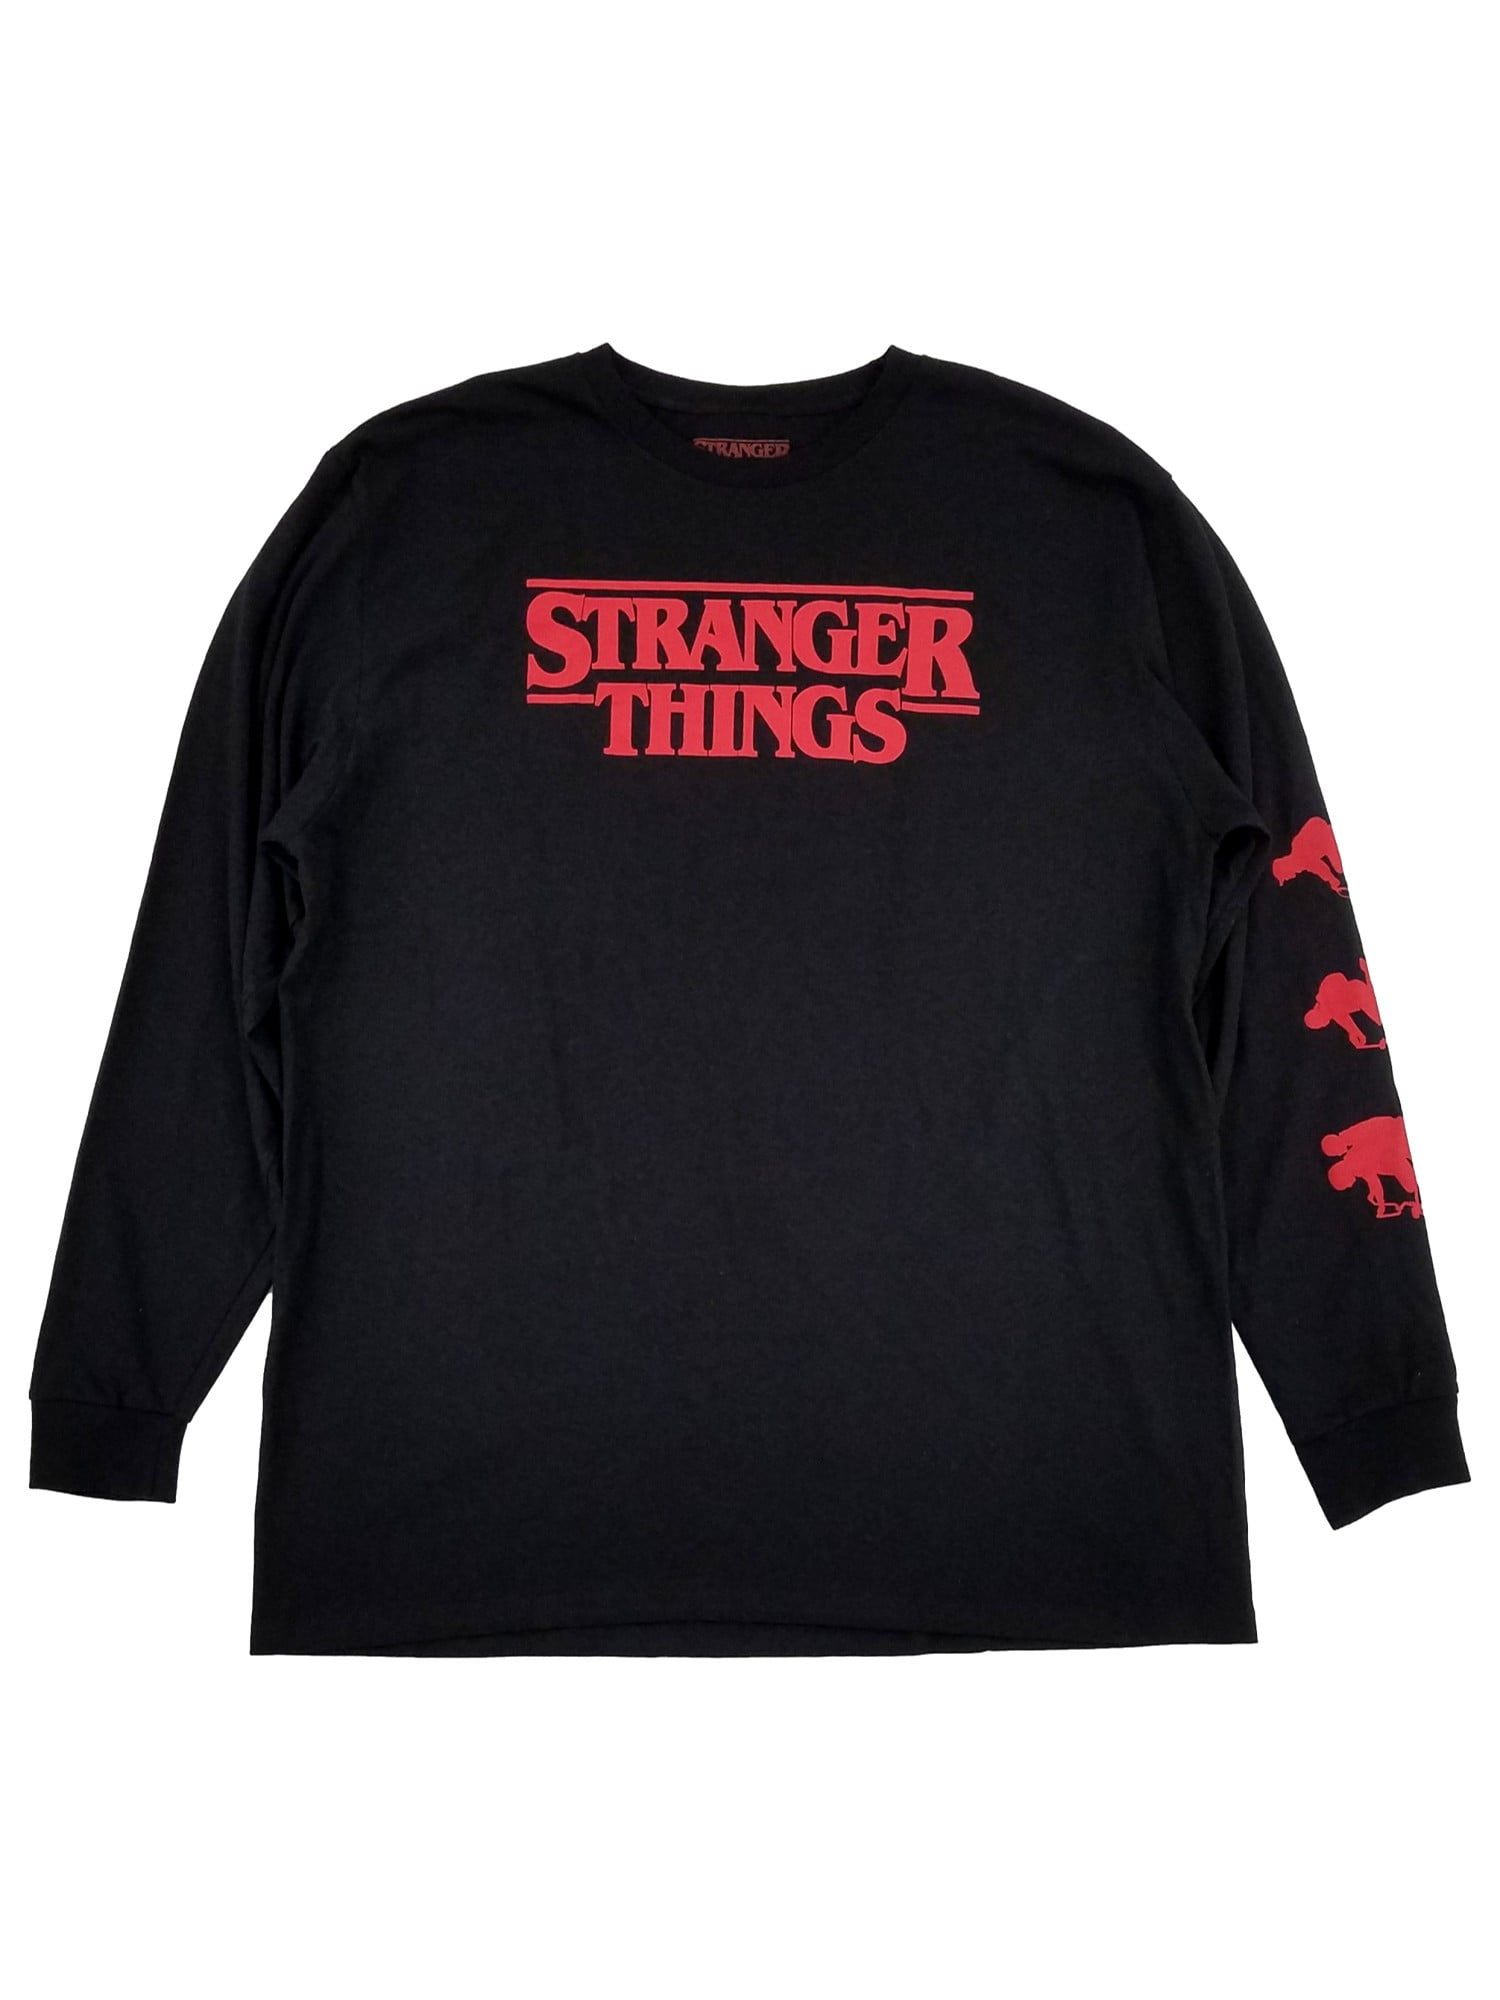 STRANGER THINGS 4 - EDDIE ROCKS - T-Shirt Black